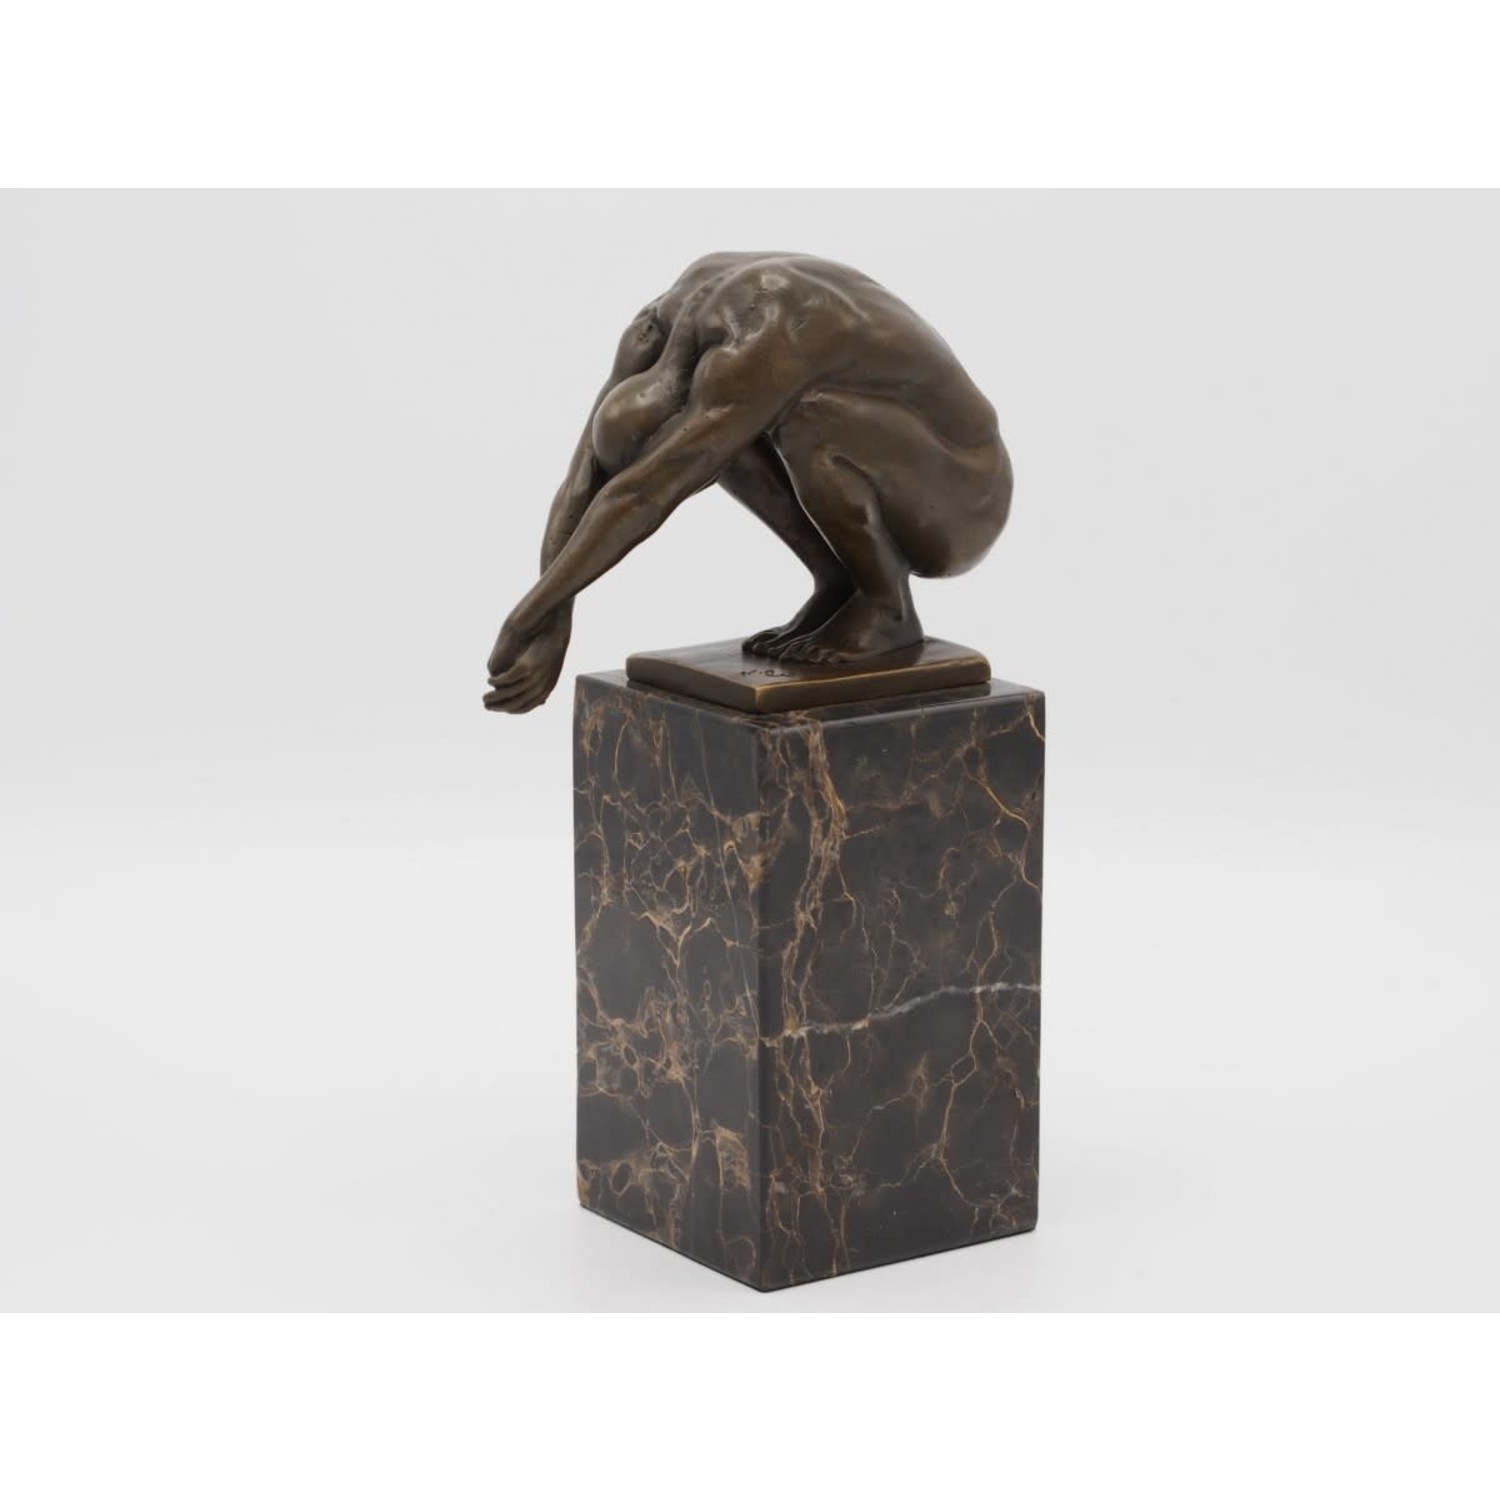 toegang Misleidend Persoon belast met sportgame Bronzen beeld Duiker op marmer sokkel - Eliassen Home & Gardenpleasure -  Eliassen Home & Garden Pleasure